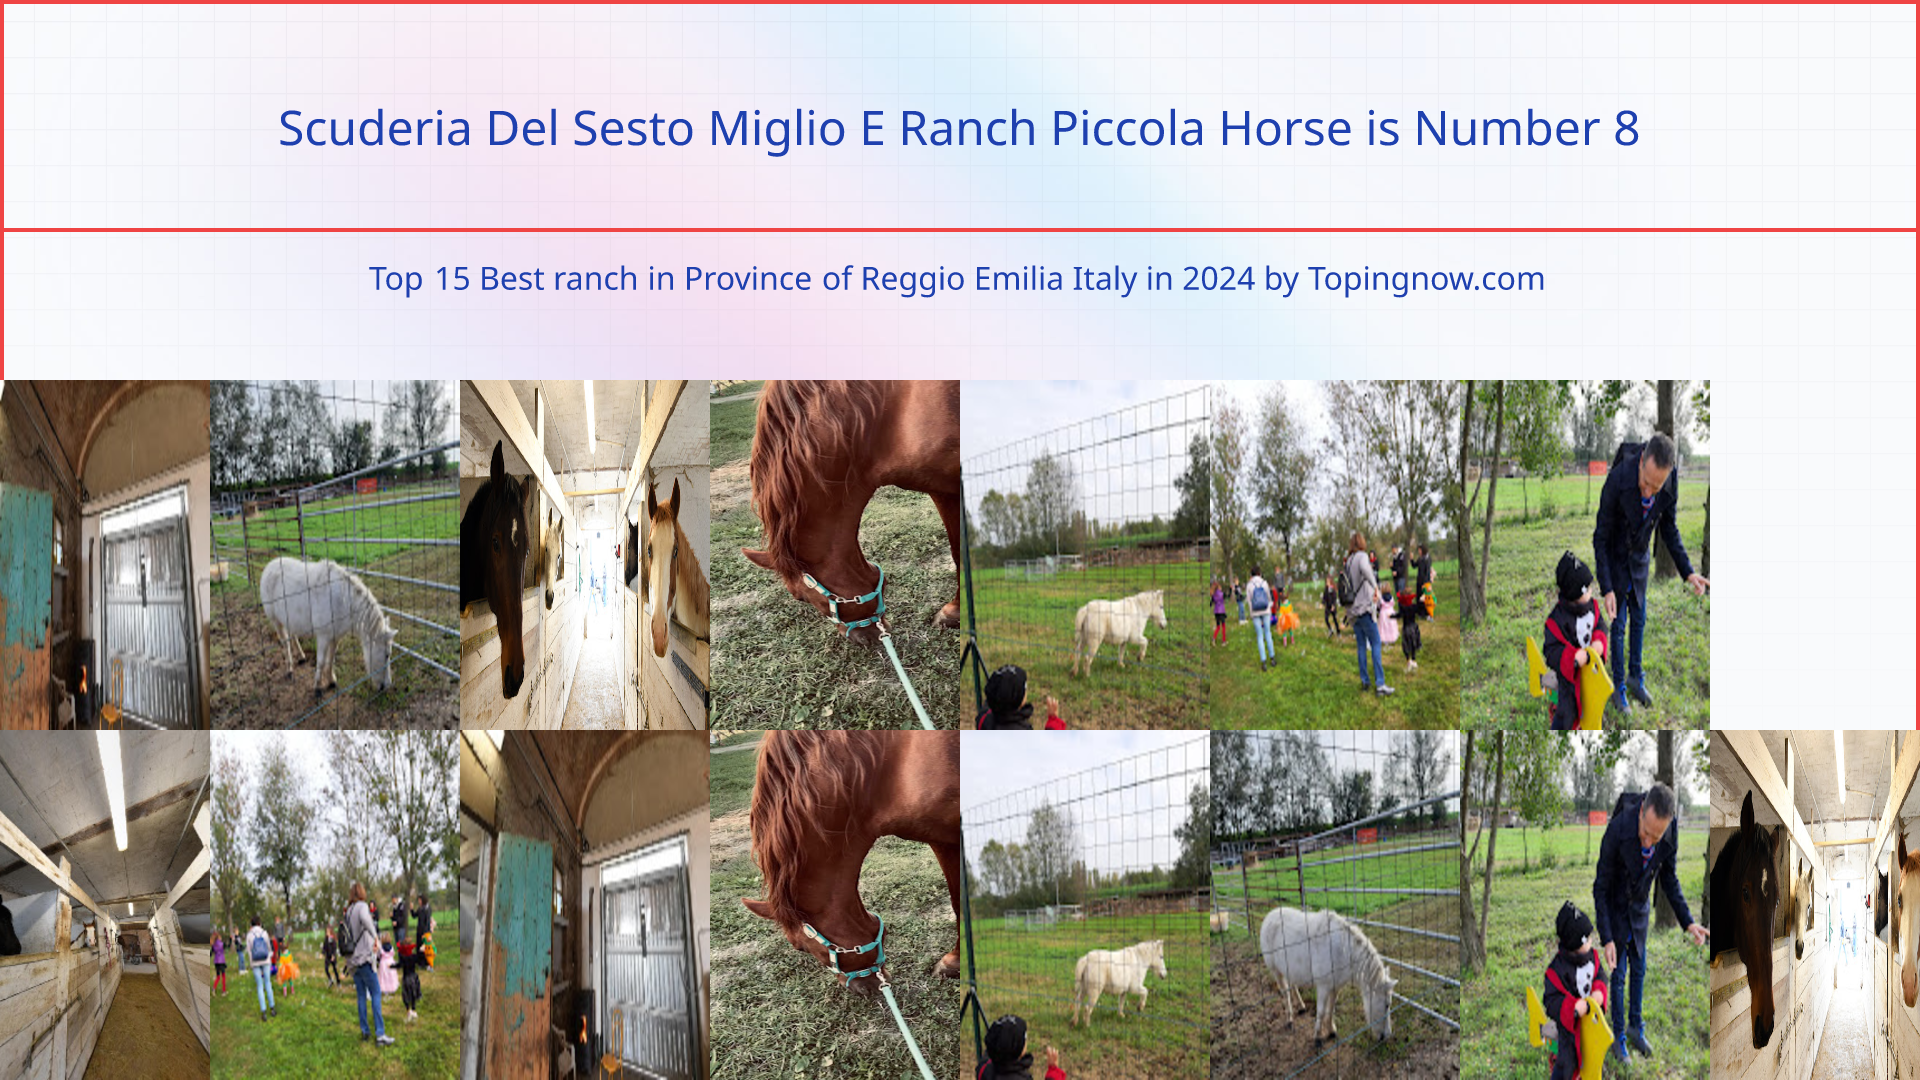 Scuderia Del Sesto Miglio E Ranch Piccola Horse: Top 15 Best ranch in Province of Reggio Emilia Italy in 2024